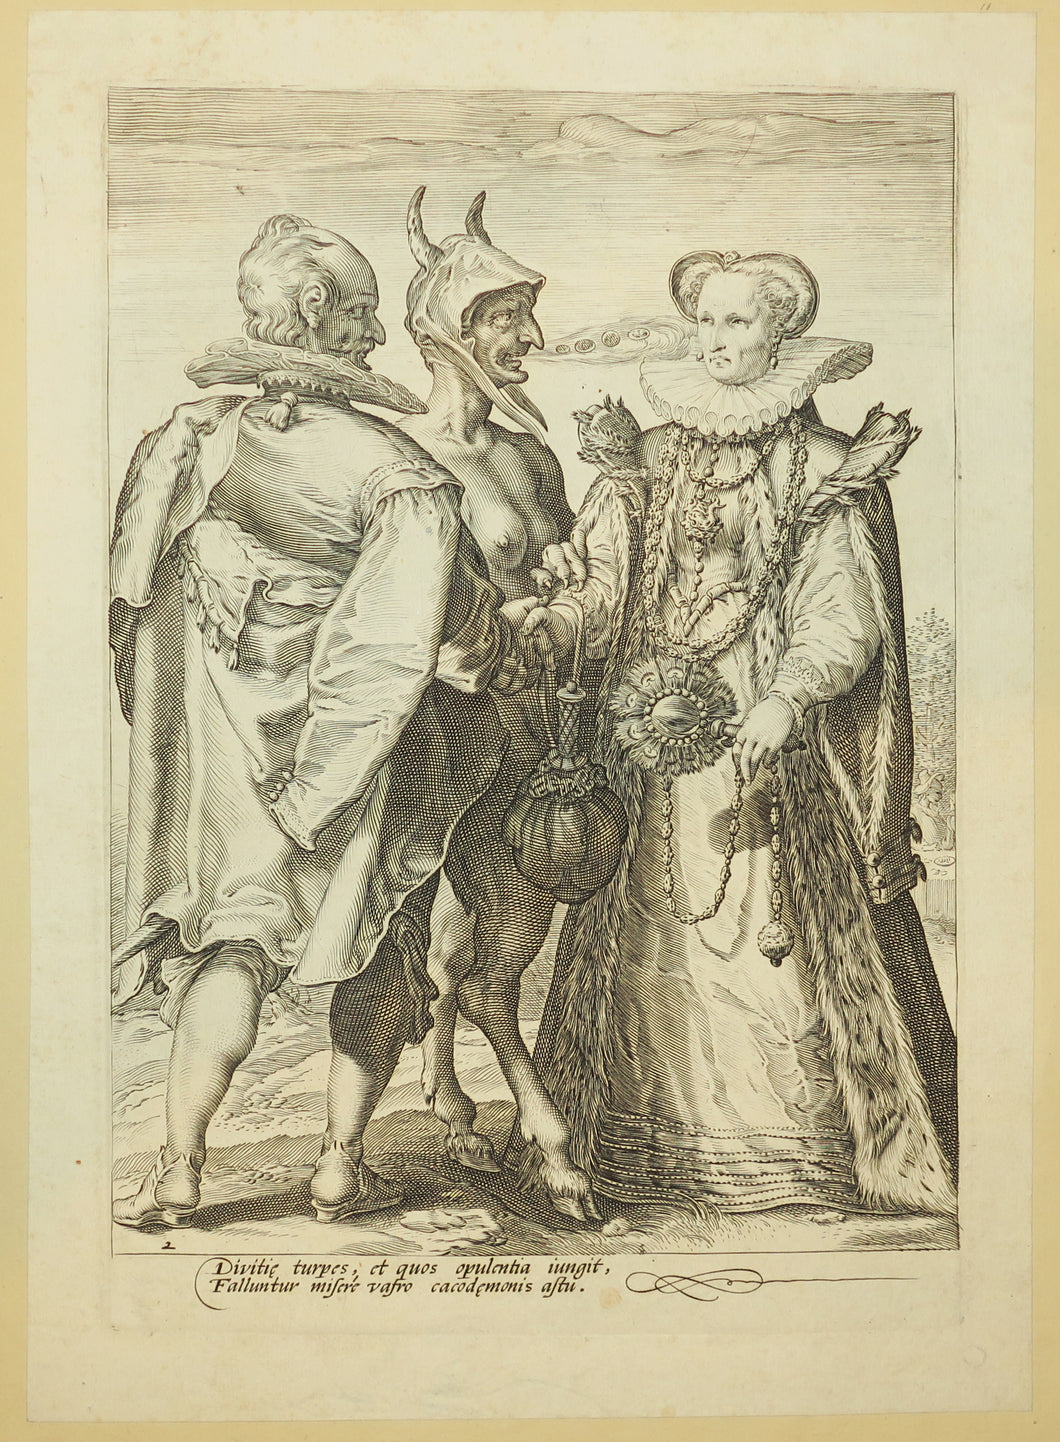 Les Trois sortes de mariage, ou Trilogie du mariage. c.1595.